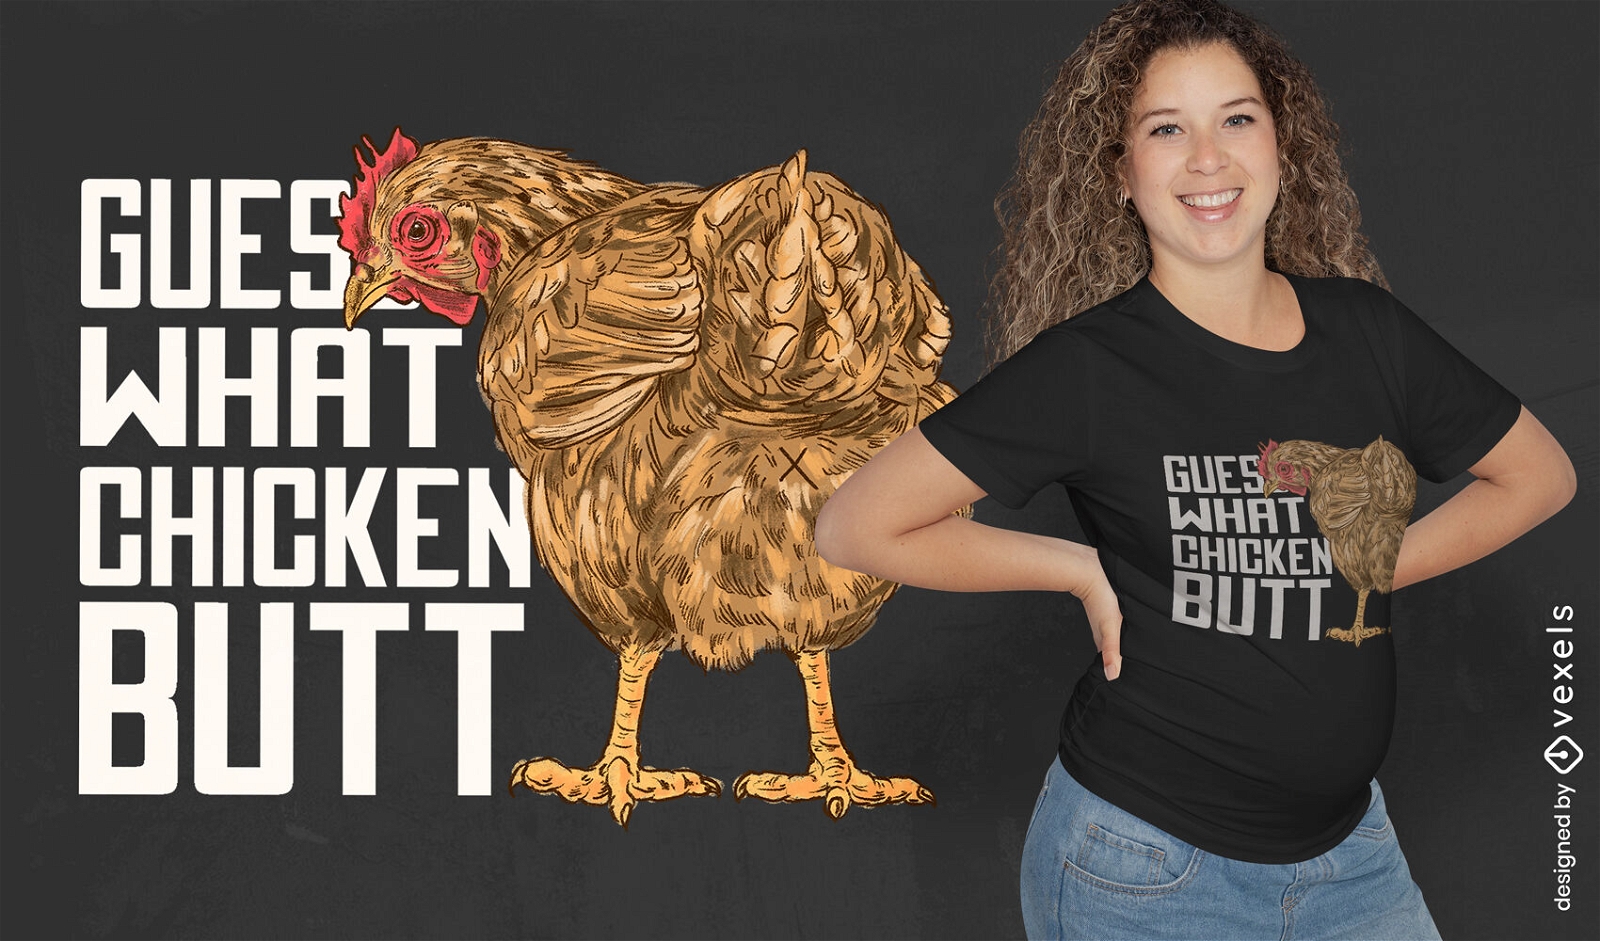 Dise?o de camiseta con cita de trasero de pollo.